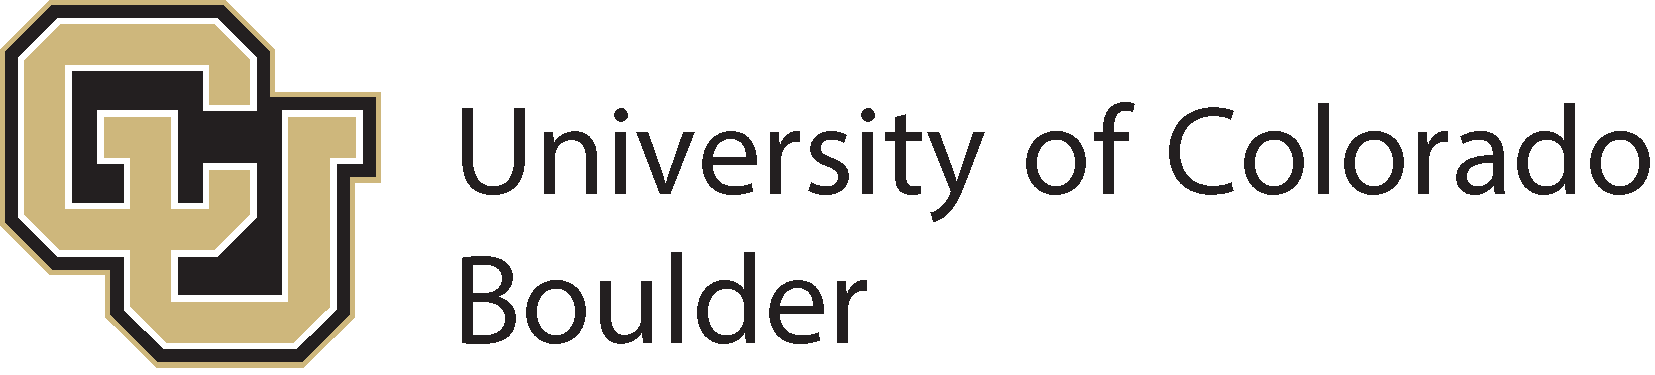 شعار جامعة كولورادو بولدر (CU Boulder) - SVG، PNG، AI، EPS ...